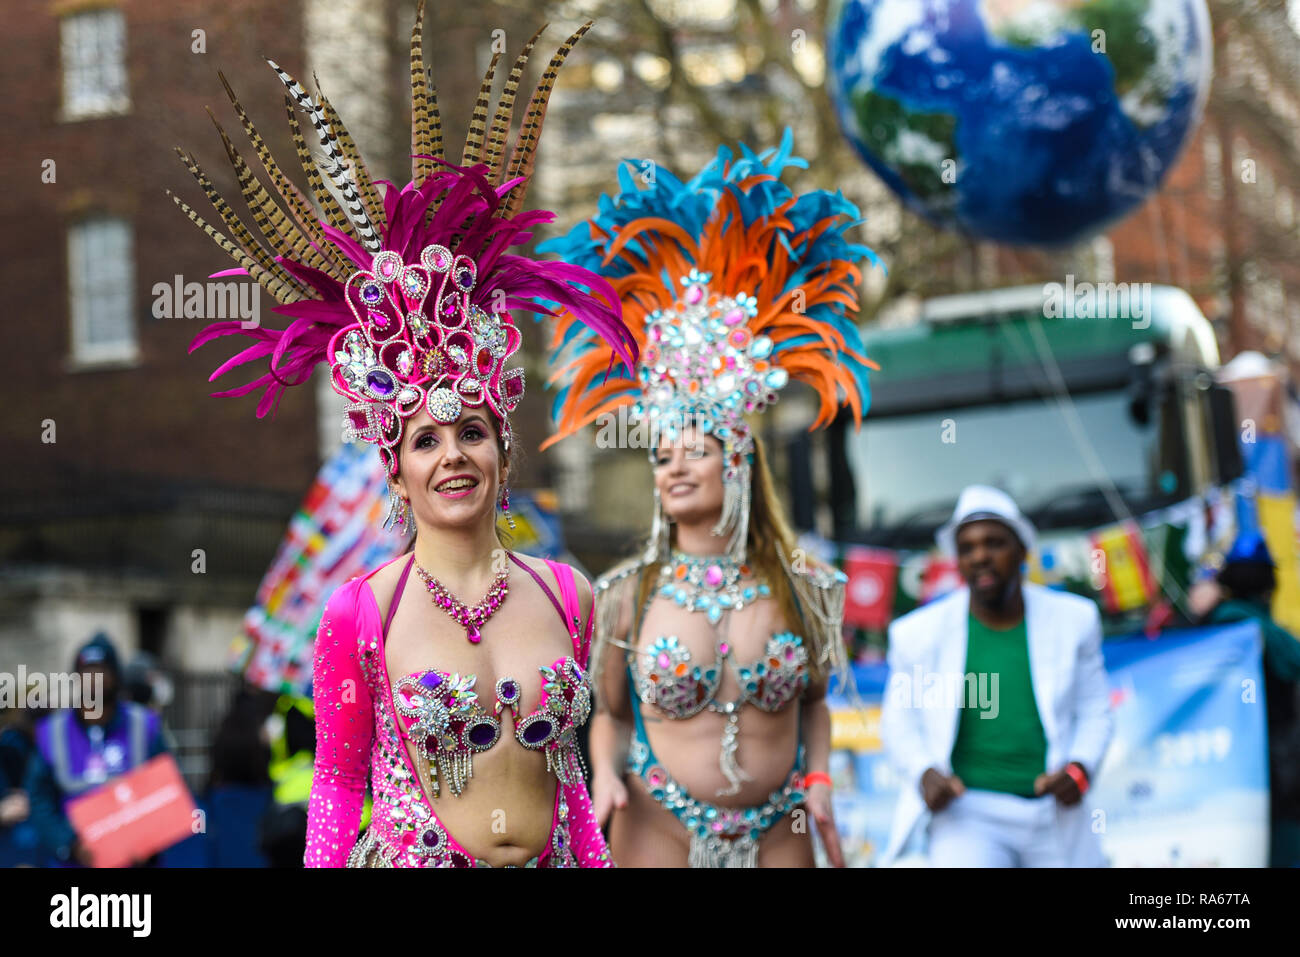 London School of Samba UK danseuse au London's New Year's Day Parade, au Royaume-Uni. Danse colorée du Brésil exotique Banque D'Images